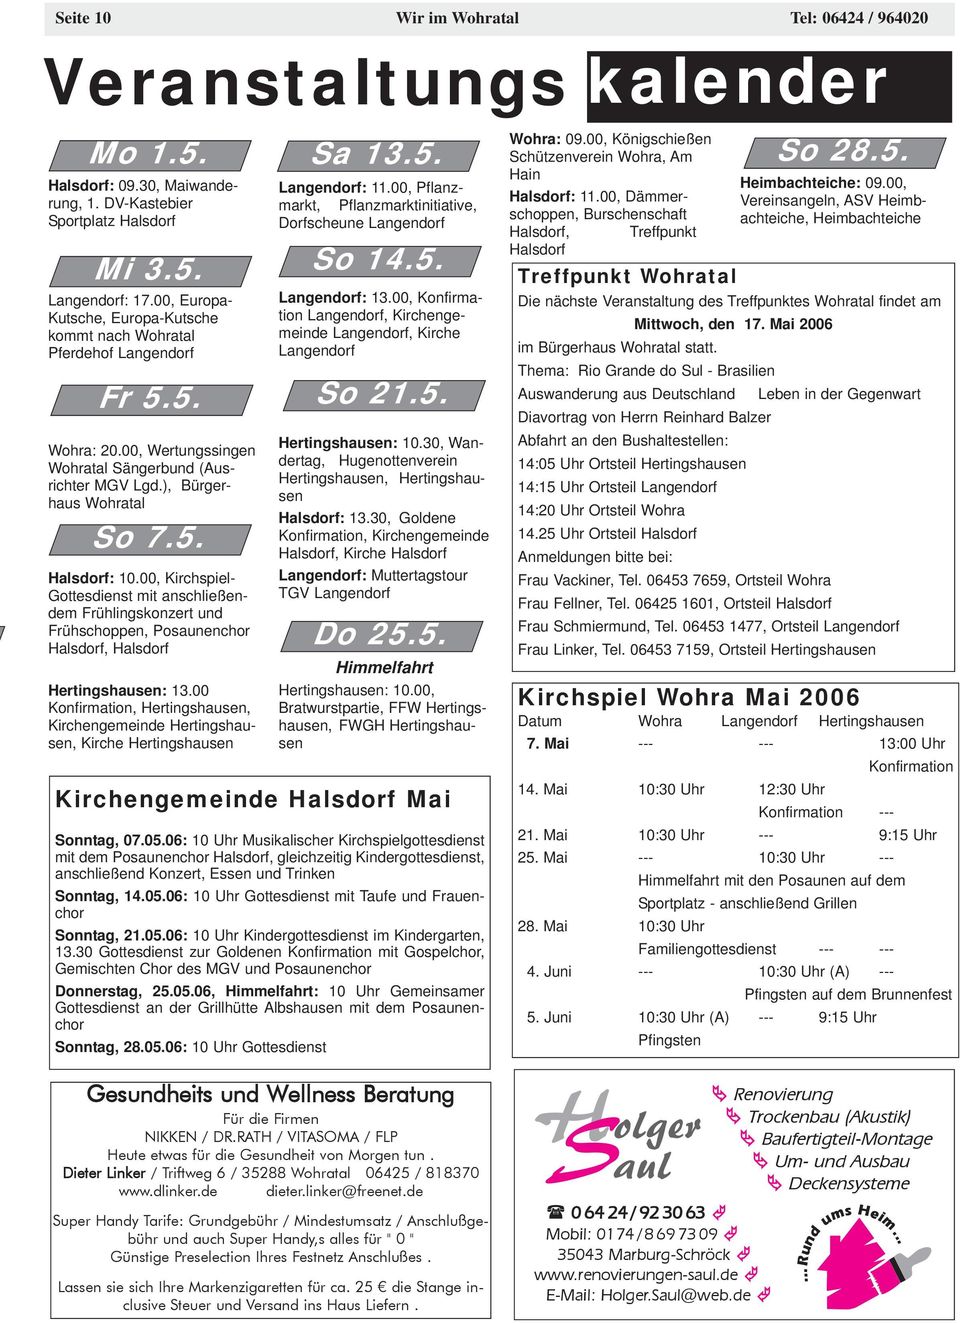 00, Kirchspiel- Gottesdienst mit anschließendem Frühlingskonzert und Frühschoppen, Posaunenchor Halsdorf, Halsdorf Hertingshausen: 13.